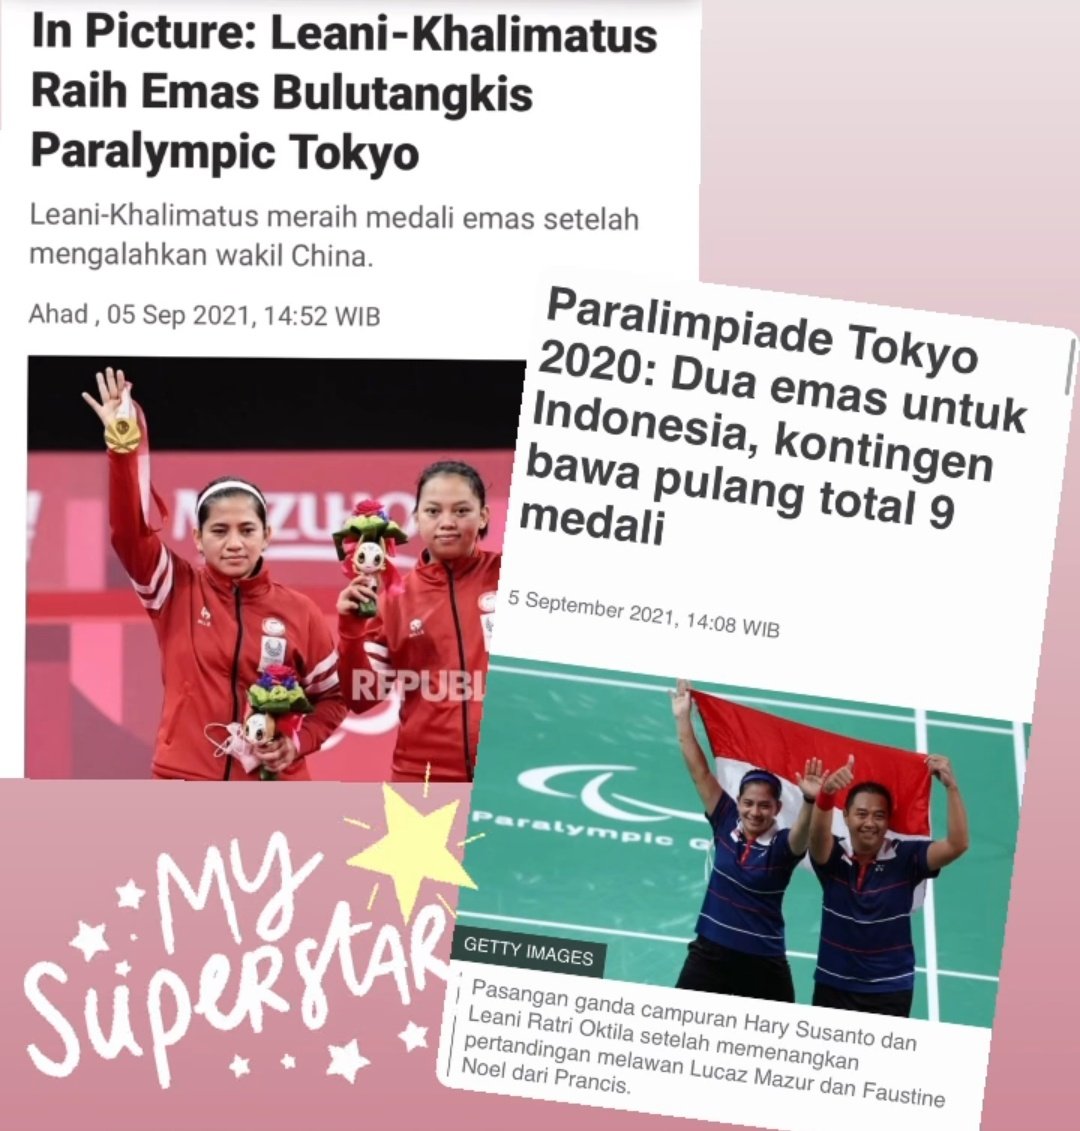 Ini berita yang seharusnya jadi headline informasi Indonesia saat ini. Komisi Penyiaran Indonesia, mah ga sensasional ga naikkk.. 🥲
#KomisiPenyiaranIndonesia #ParalympicsTokyo2020